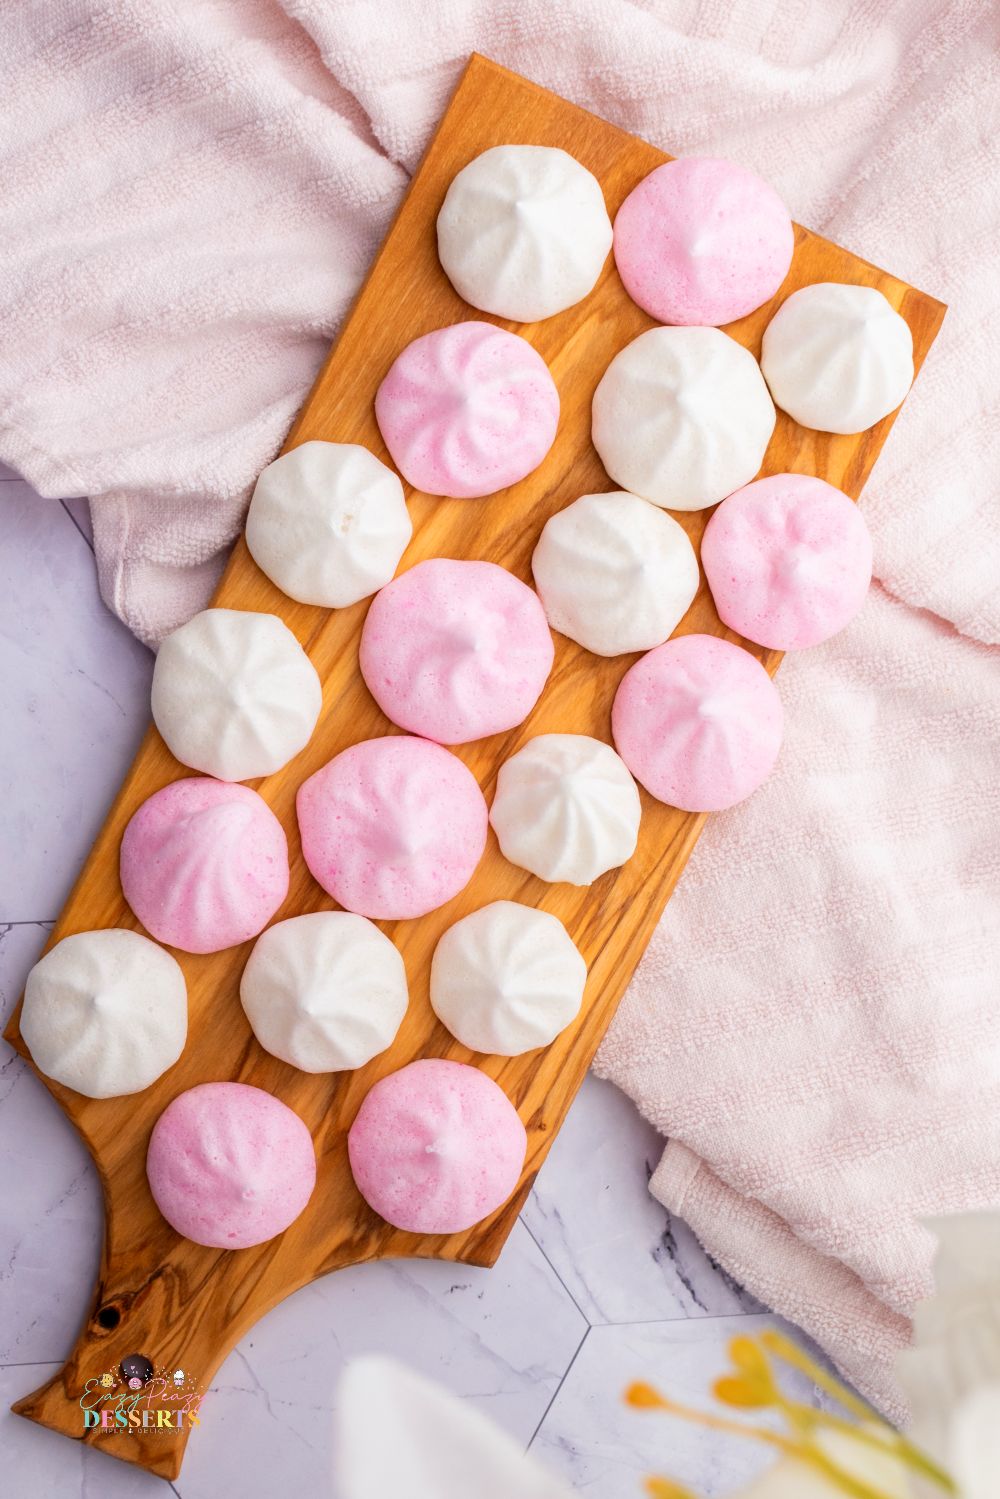 Image of lemon meringue cookies in pink and white